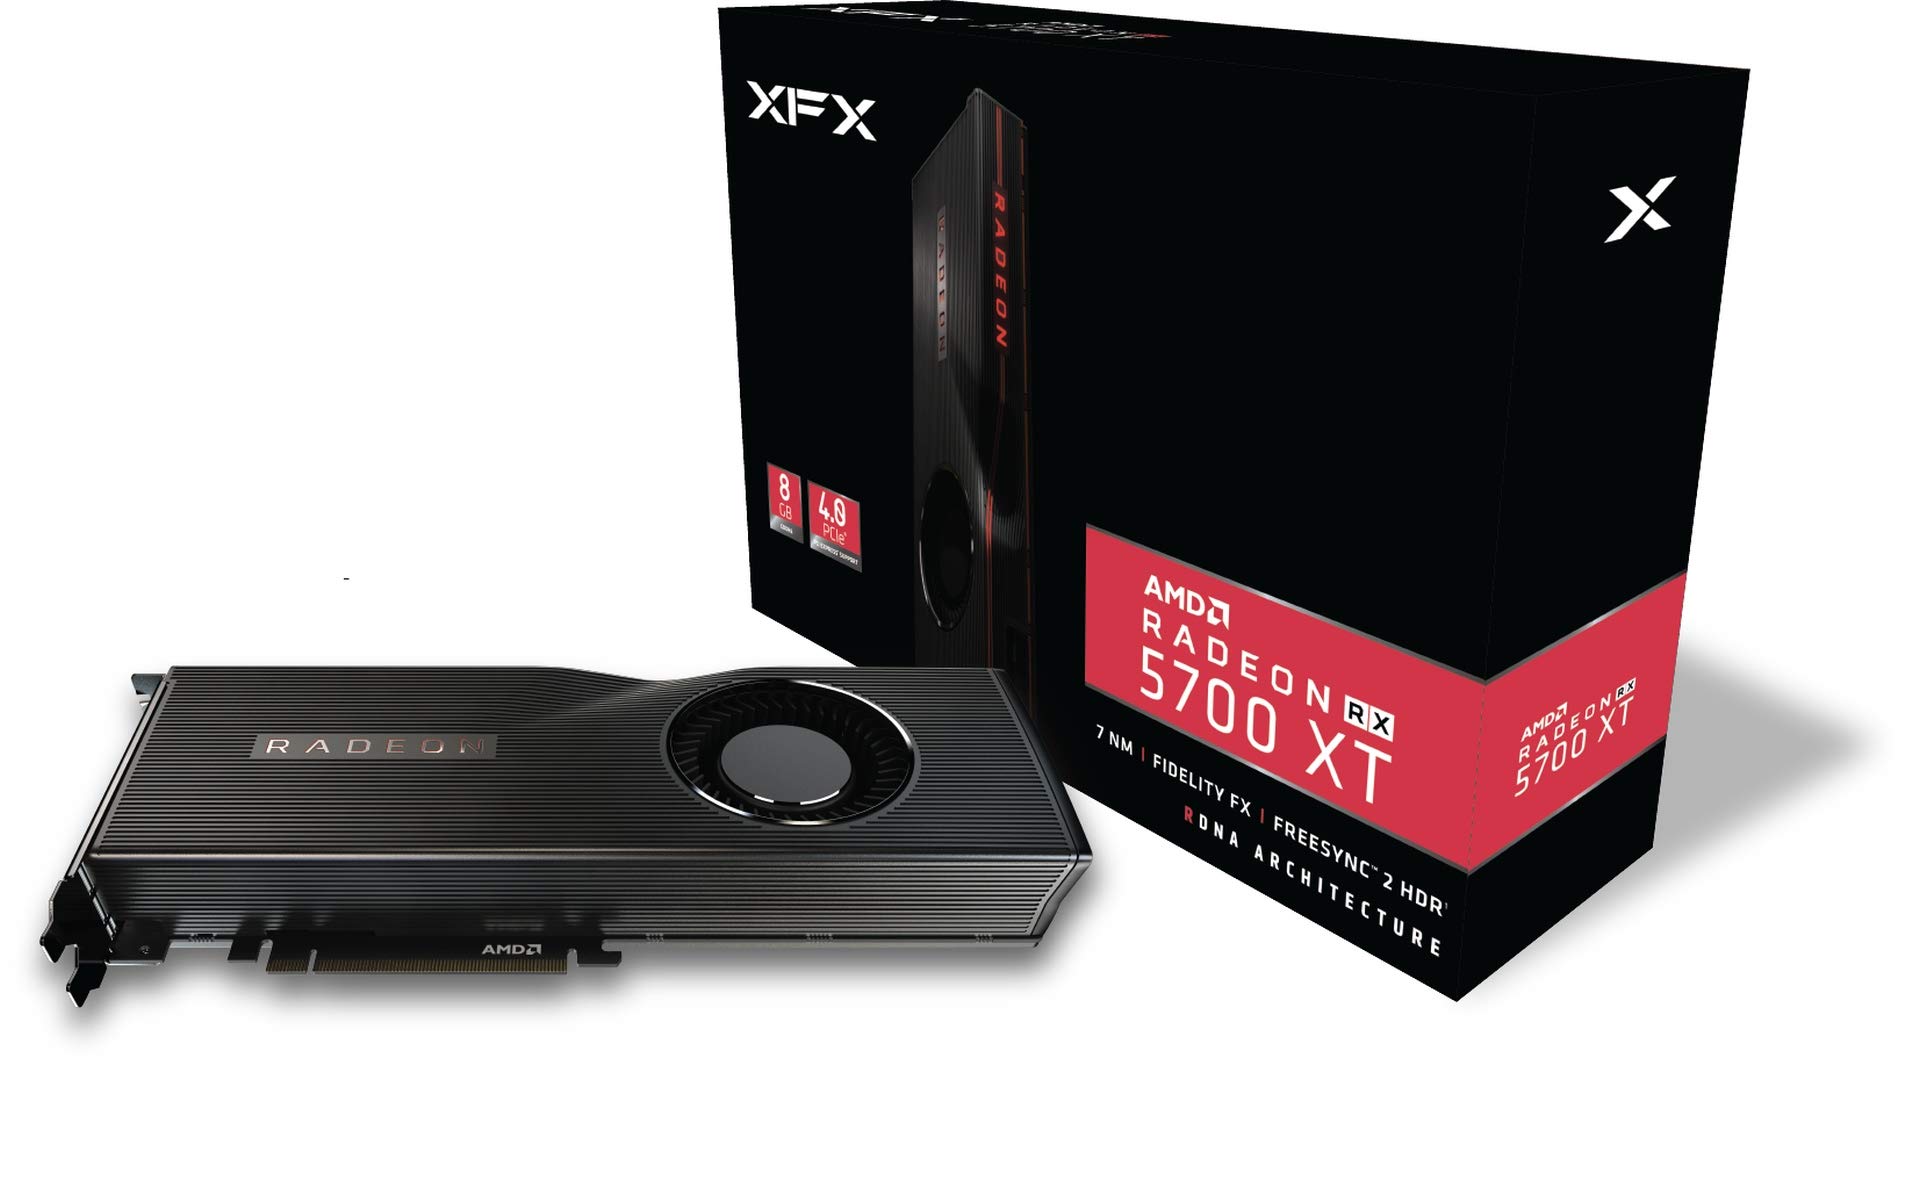 XFX Radeon RX 5700 XT 8GB GDDR6 3xDP HDMI, PCI-E AMD Graphics Card (RX-57XT8MFD6)